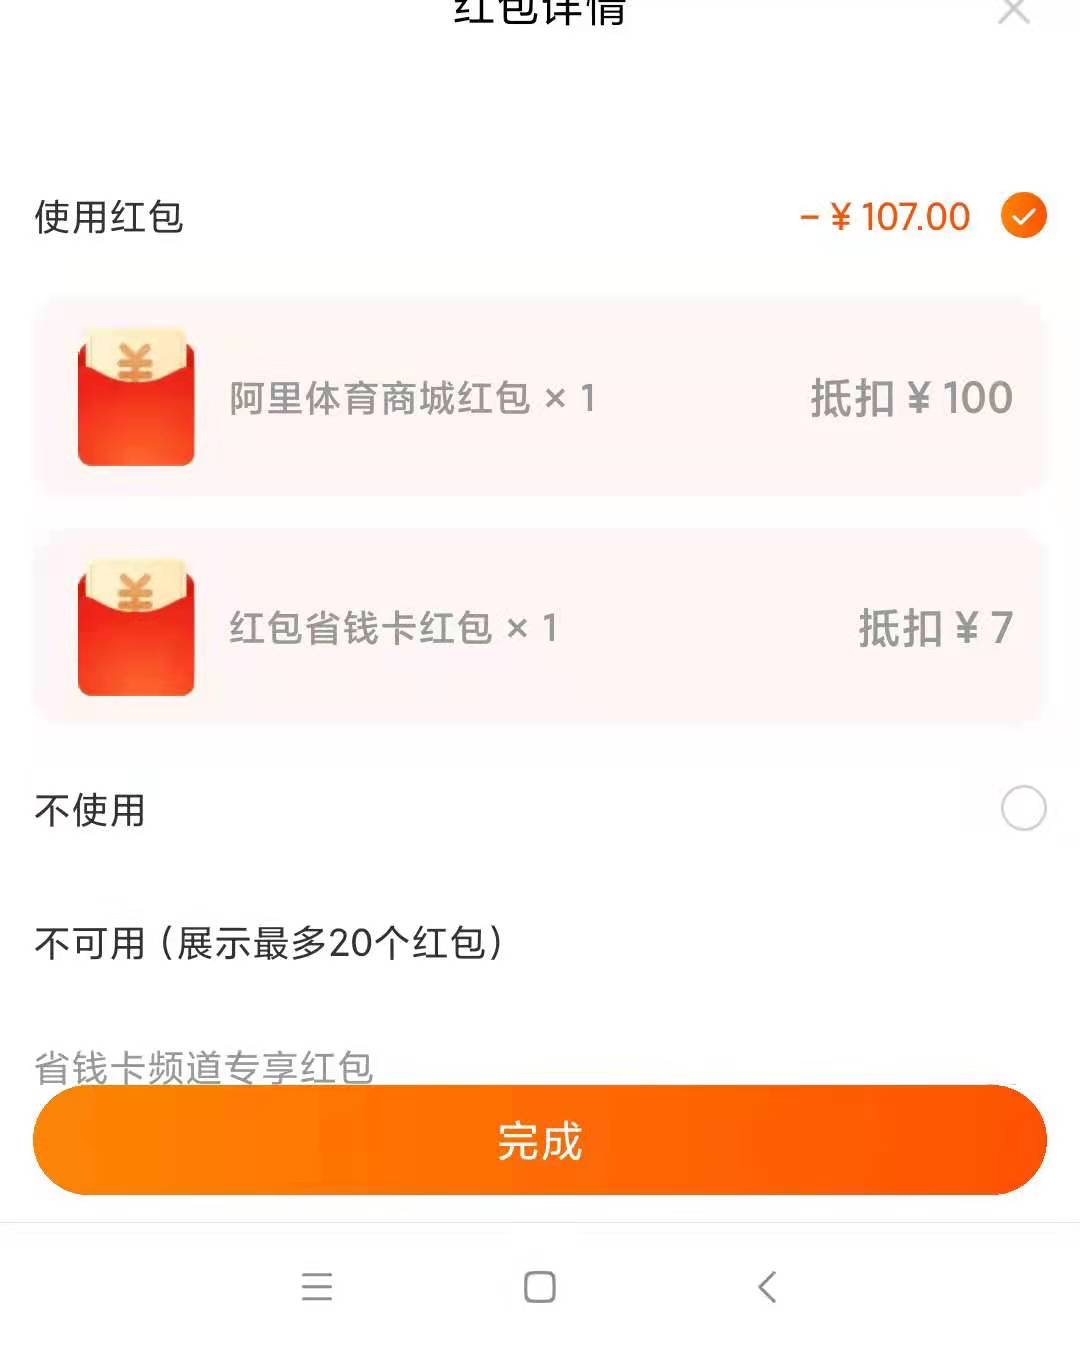 100红包可以叠加省钱月卡-惠小助(52huixz.com)